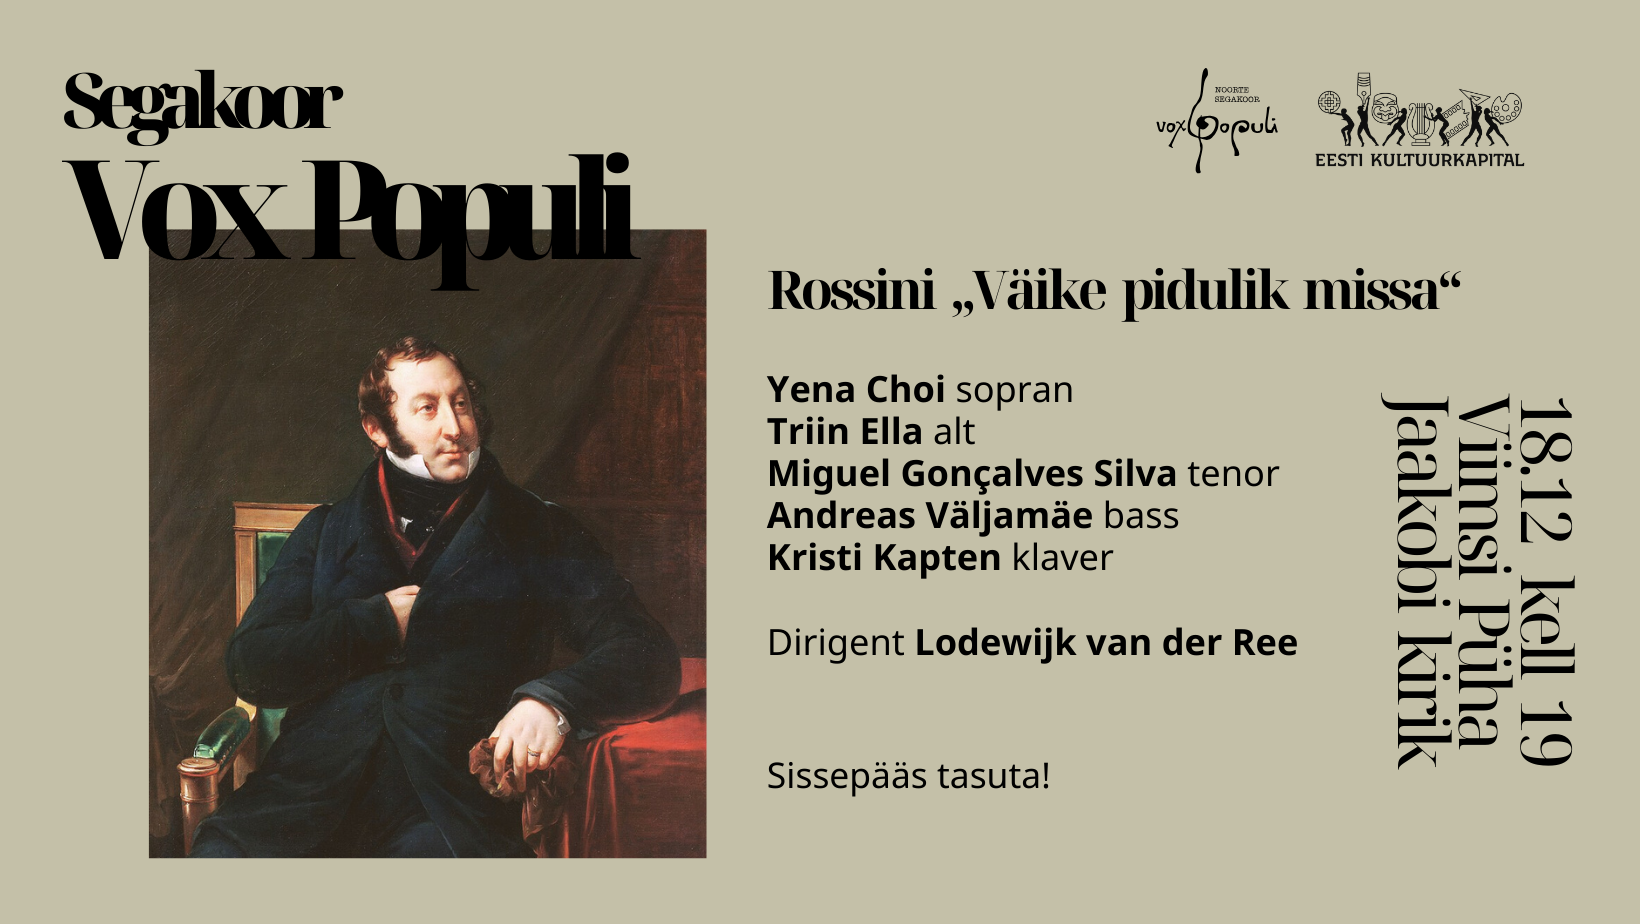 Jõulukontsert 18. detsembril. Rossini “Väike pidulik missa”